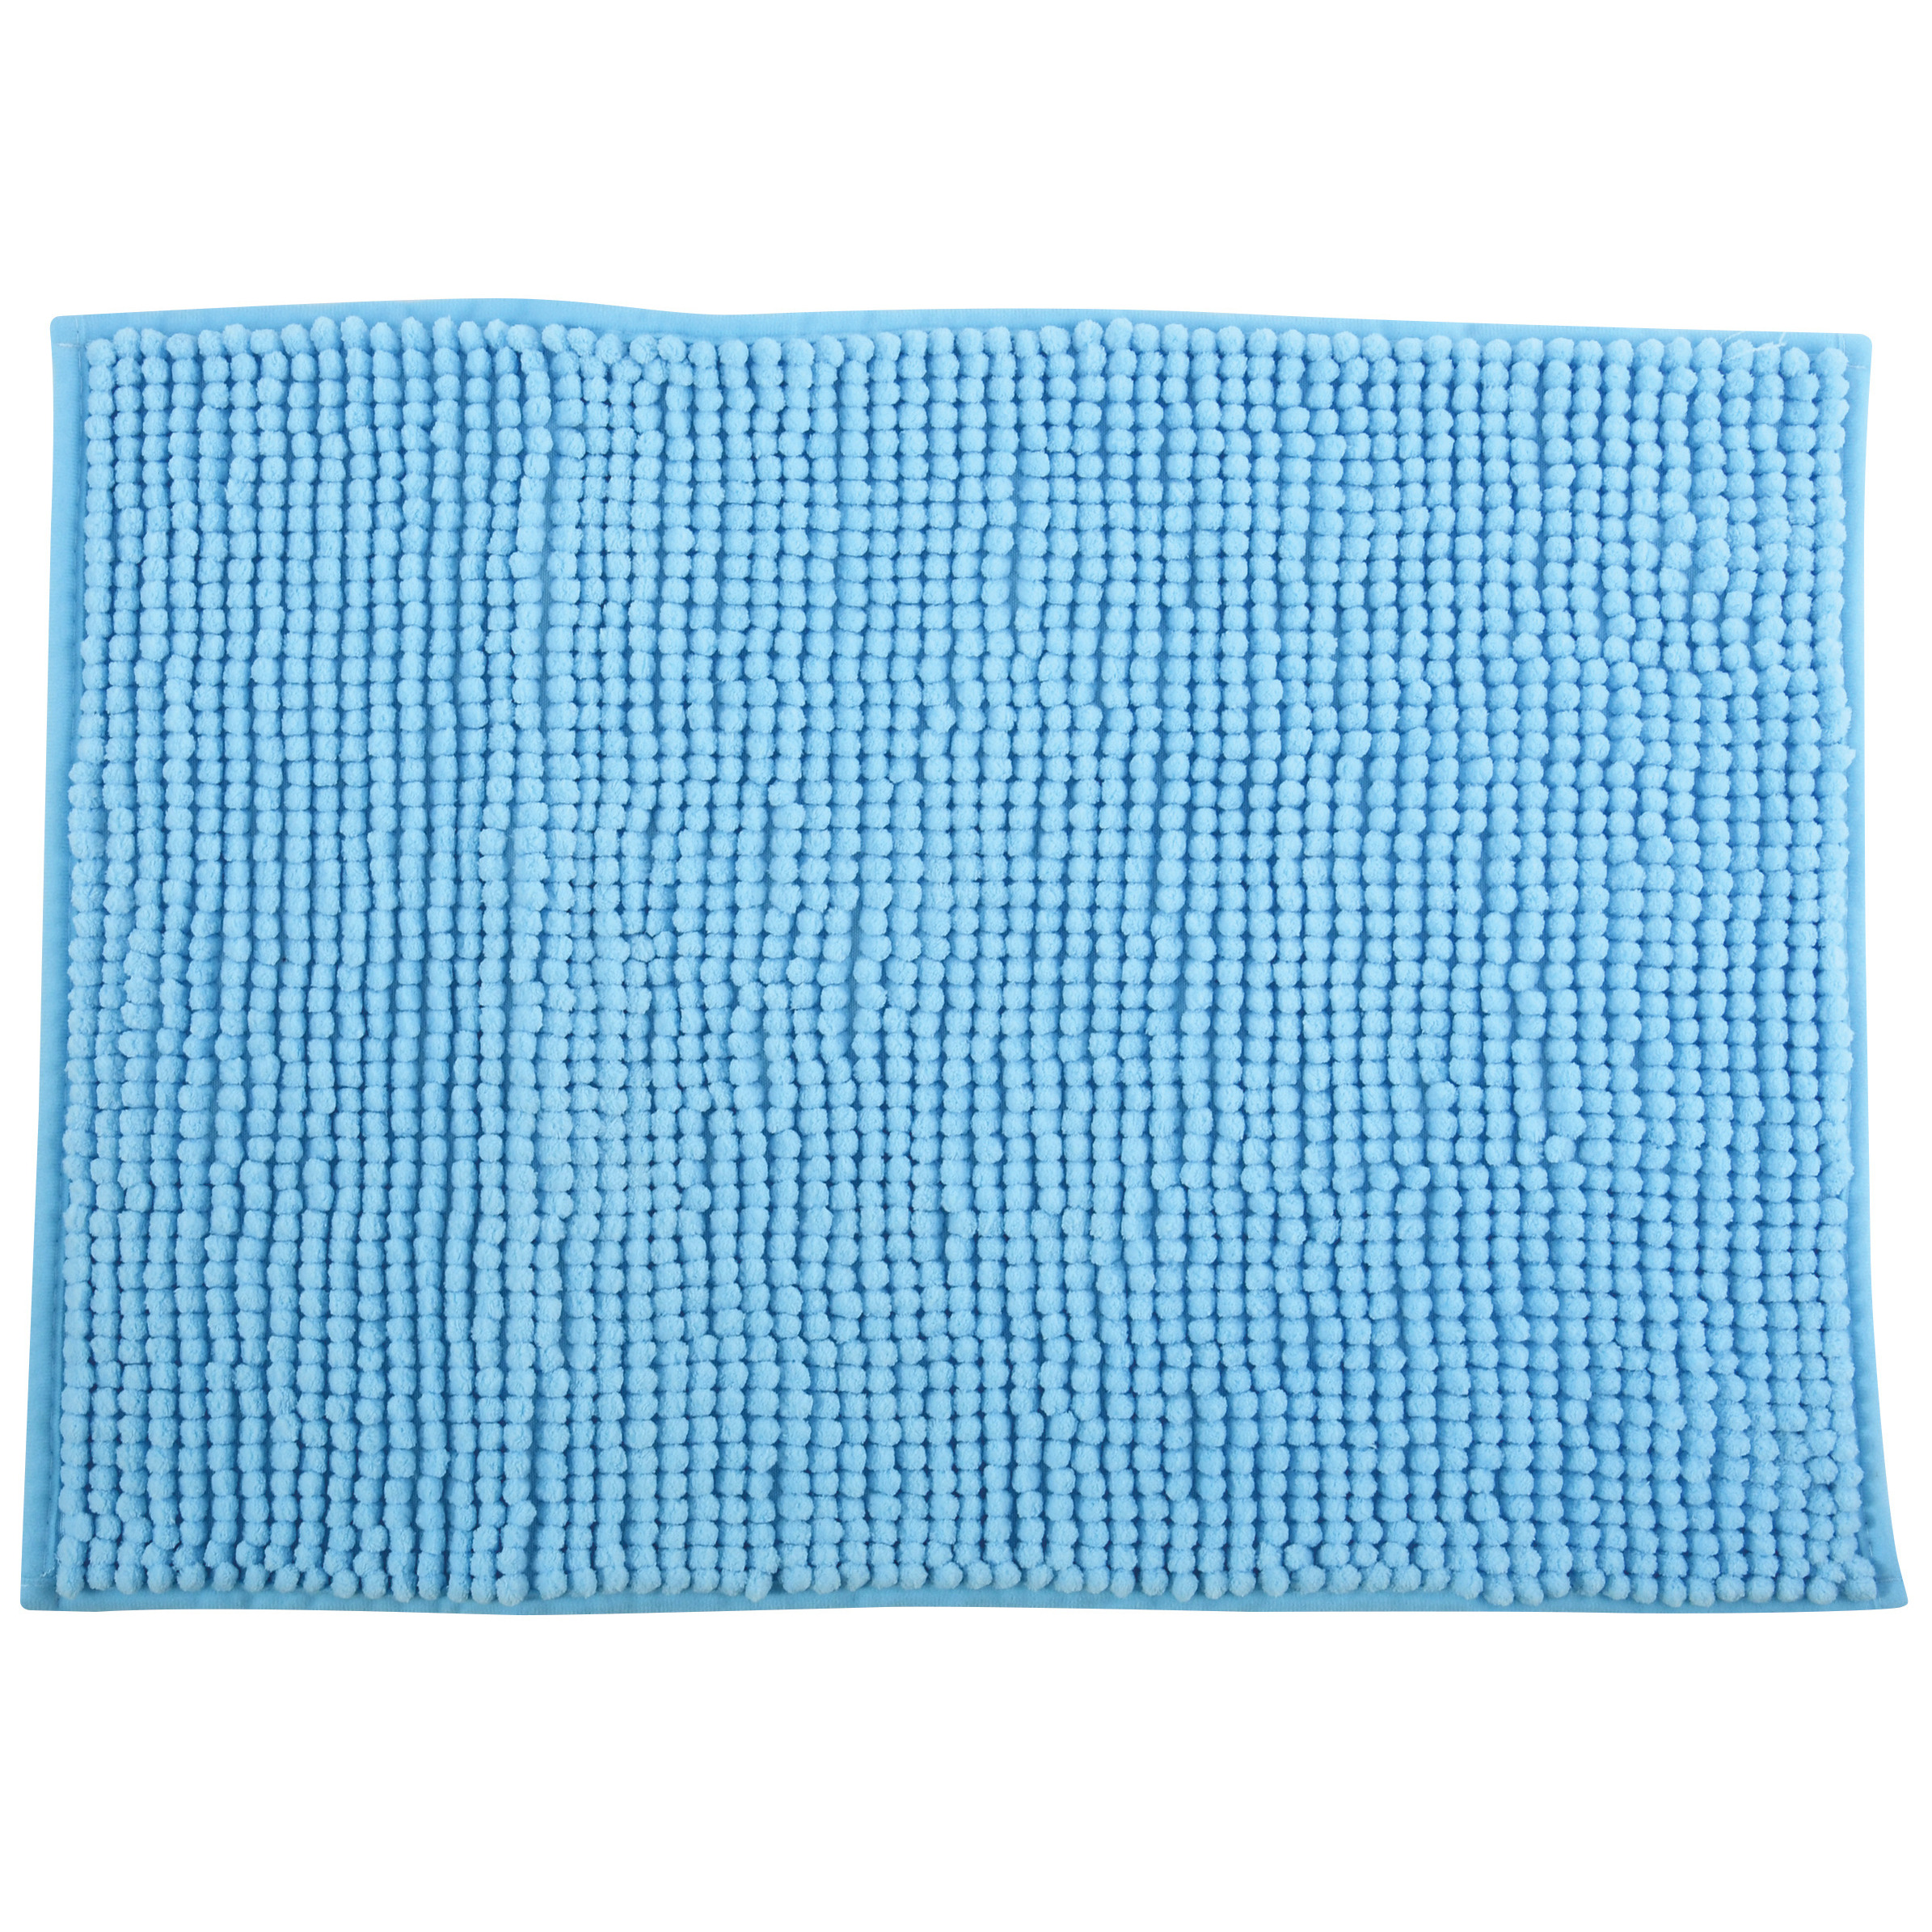 Badkamerkleedje-badmat tapijt voor op de vloer lichtblauw 40 x 60 cm